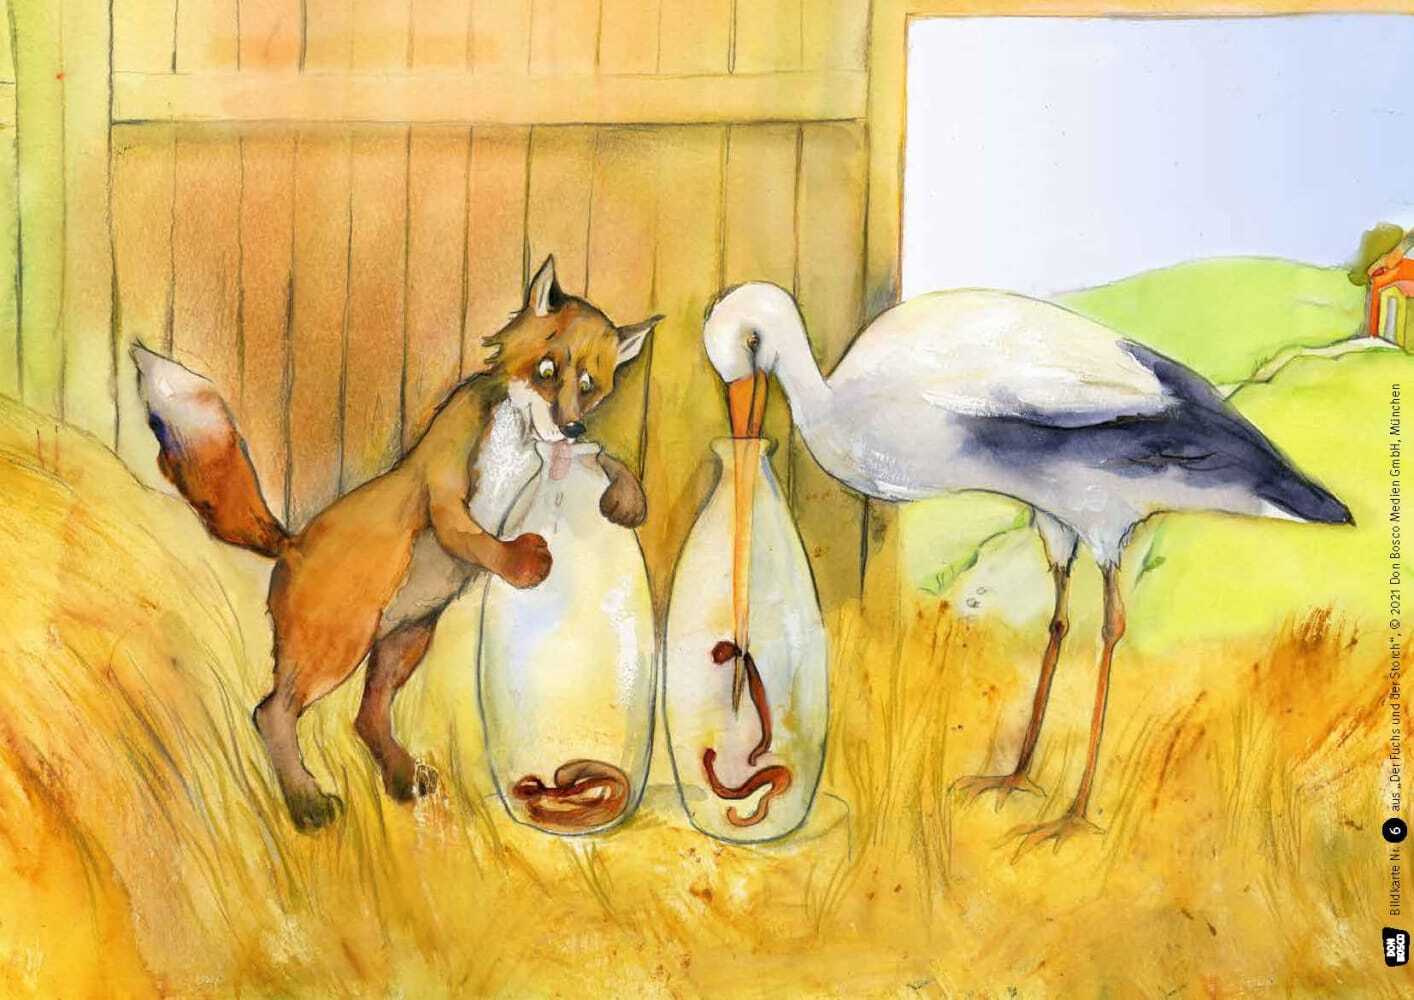 Der Fuchs und der Storch. Eine Fabel von Äsop. Kamishibai Bildkartenset.